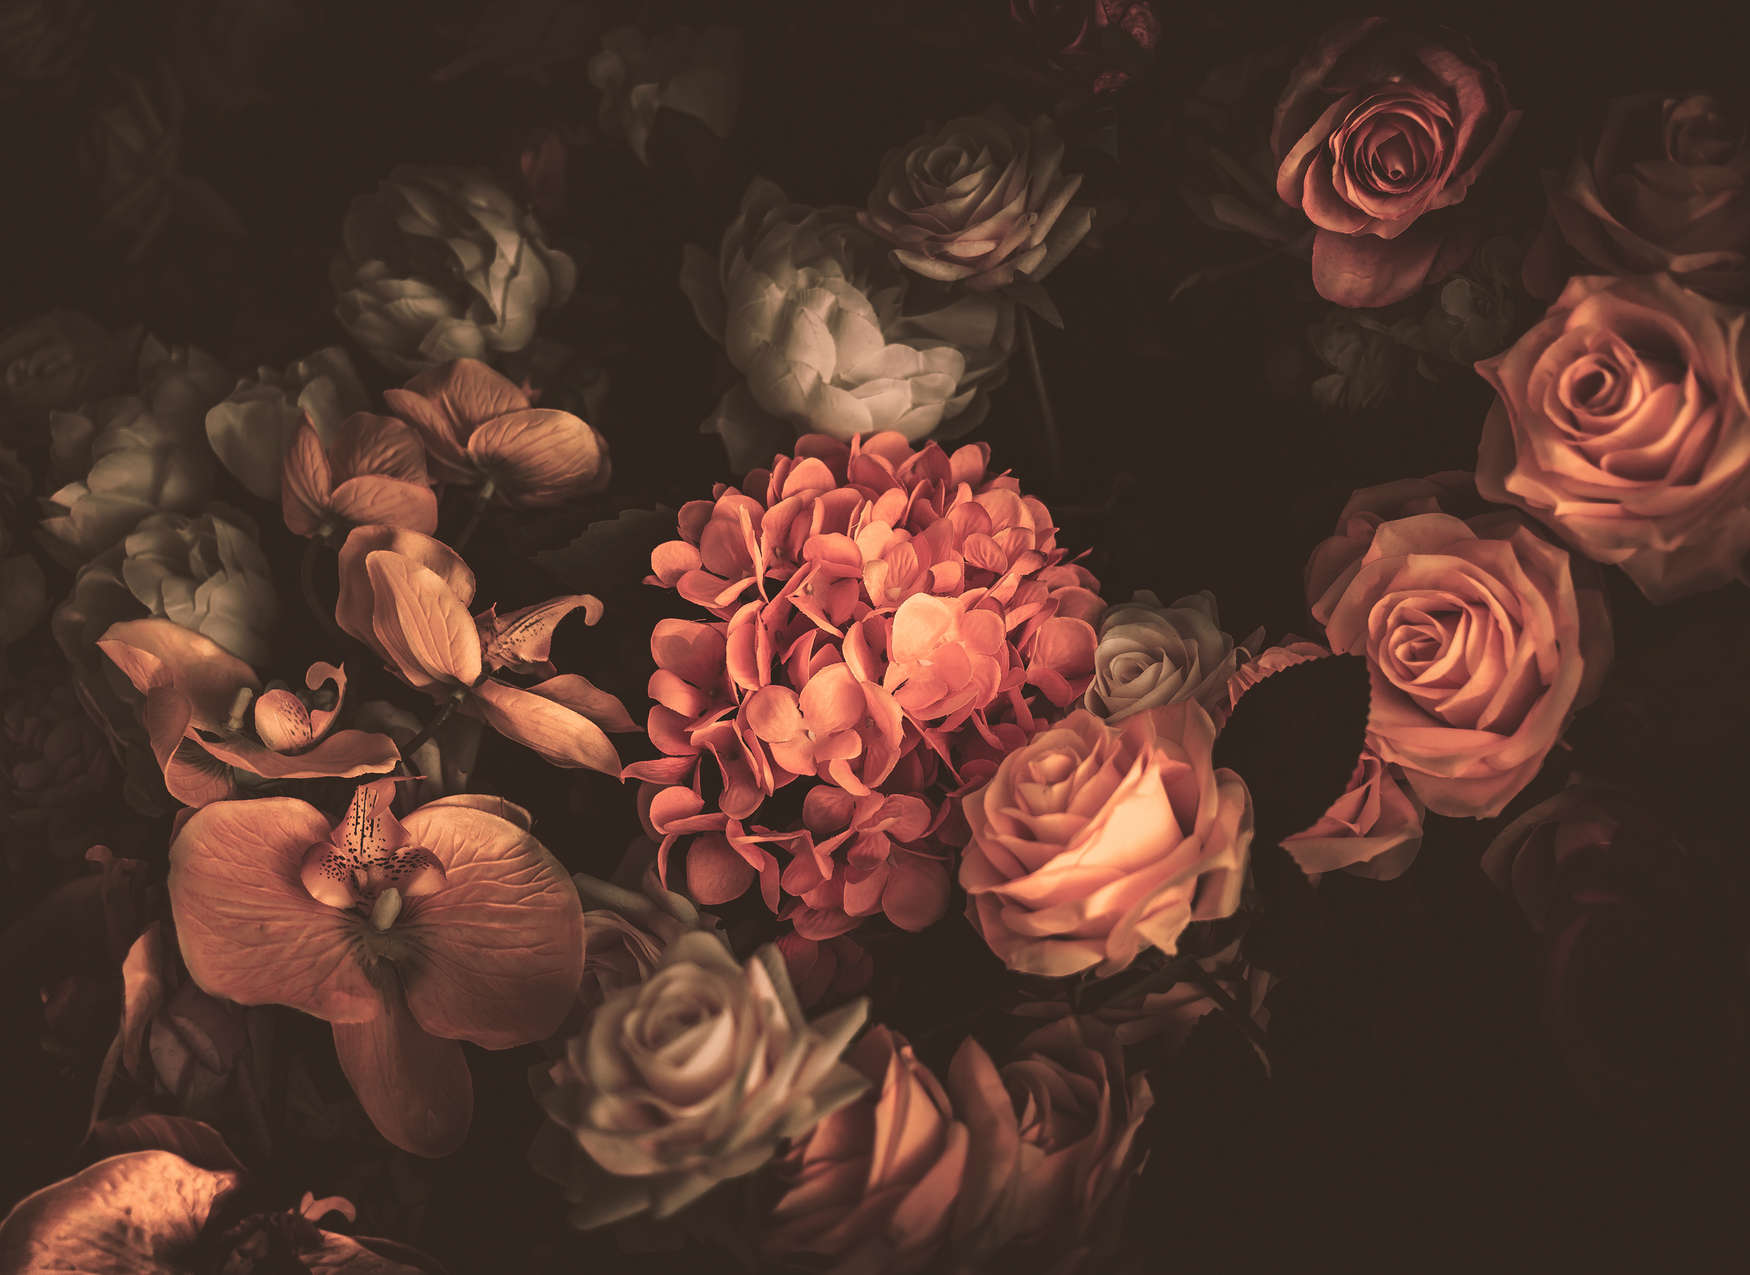             Papel Pintado Romántico con Ramo de Flores - Naranja, Rosa, Negro
        